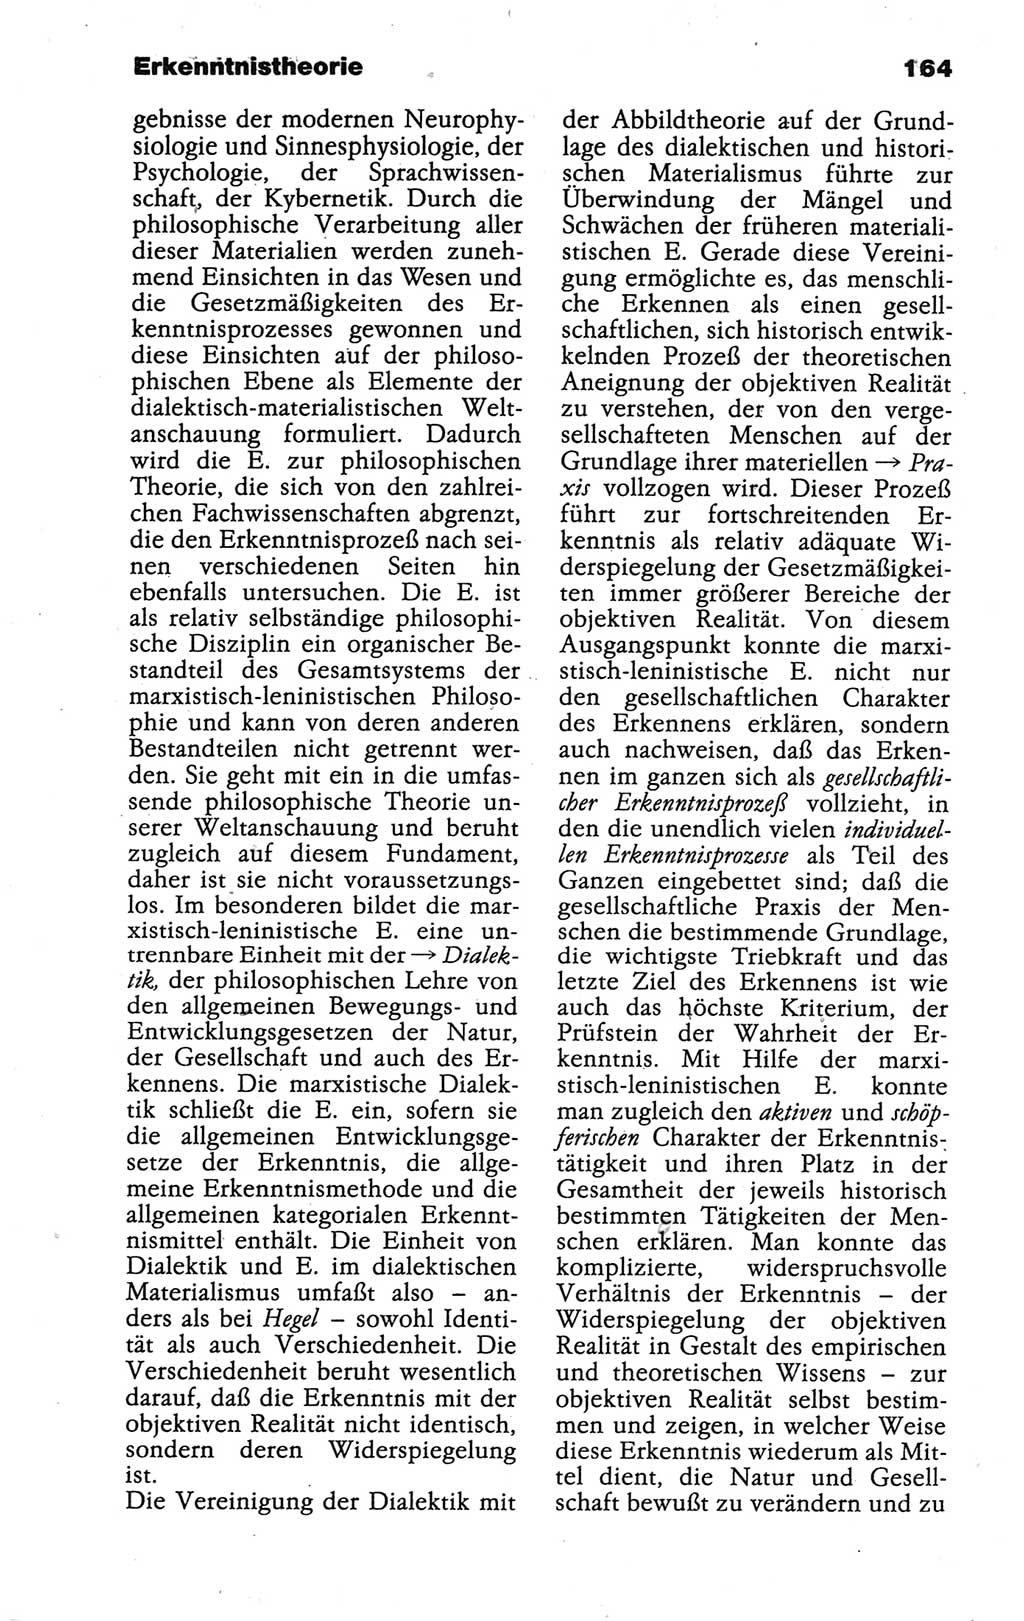 Wörterbuch der marxistisch-leninistischen Philosophie [Deutsche Demokratische Republik (DDR)] 1986, Seite 164 (Wb. ML Phil. DDR 1986, S. 164)